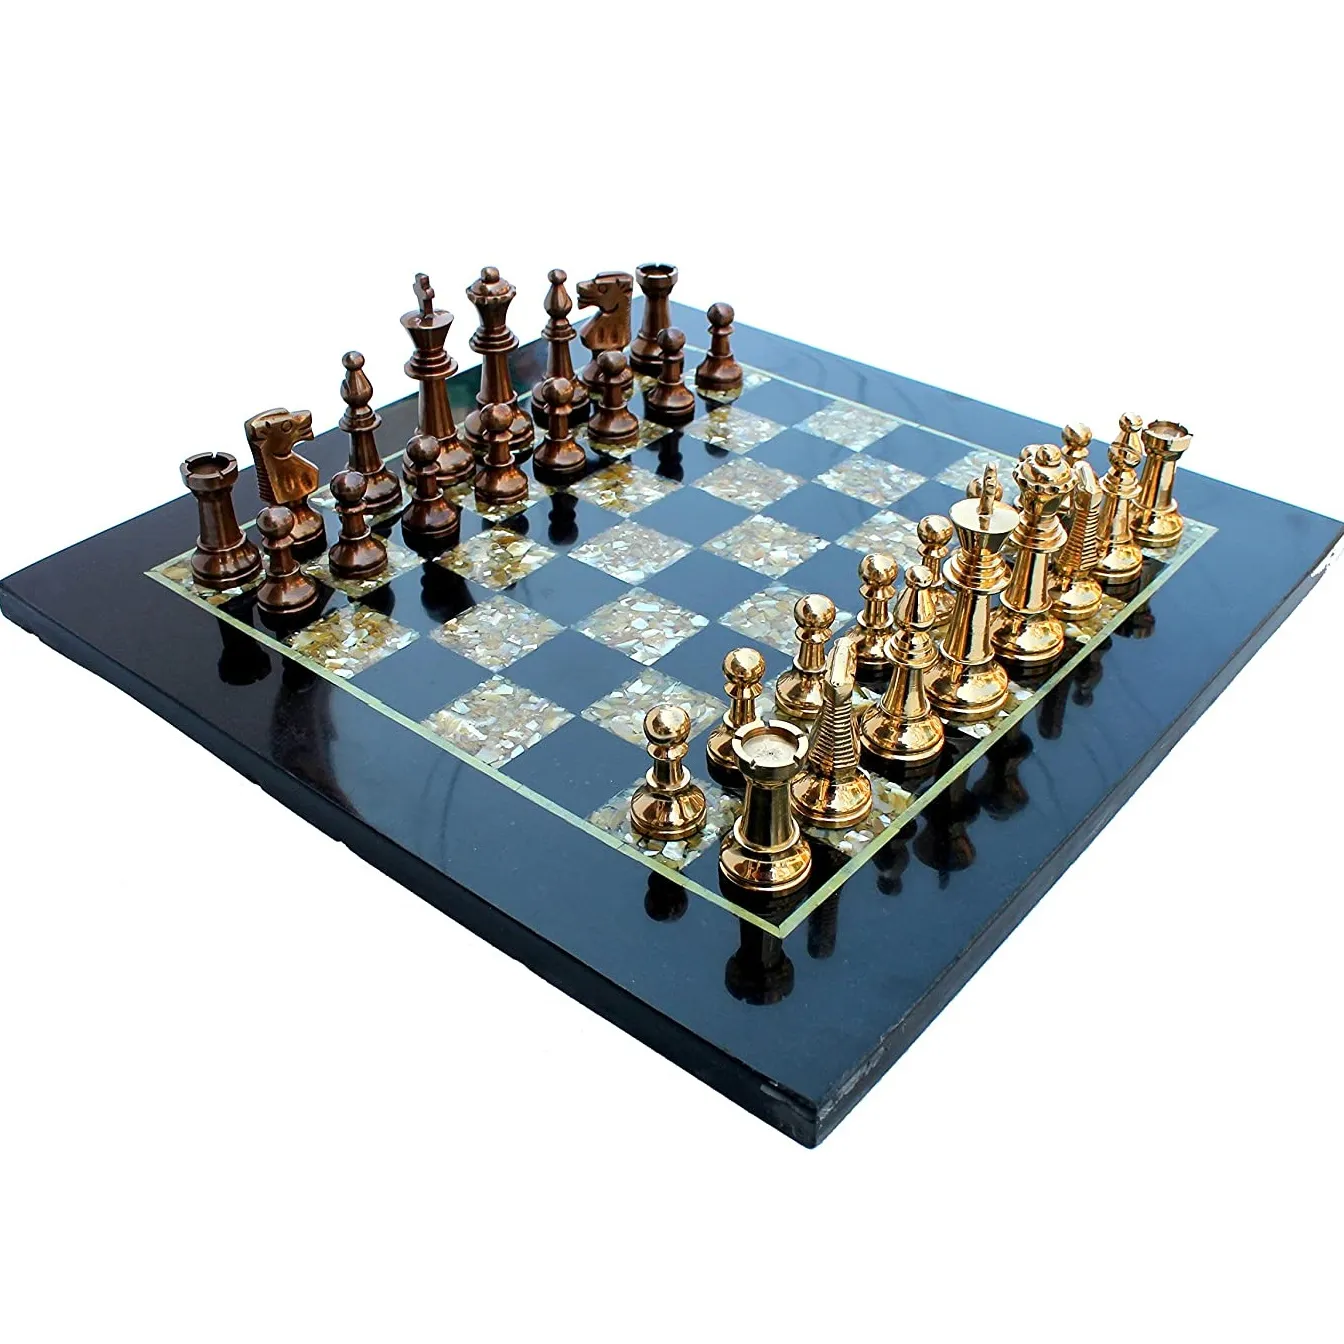 Schaakspel Board Set-Gemaakt Met Zwart Marmer, parelmoer & Messing Stukken (15 "X 15")